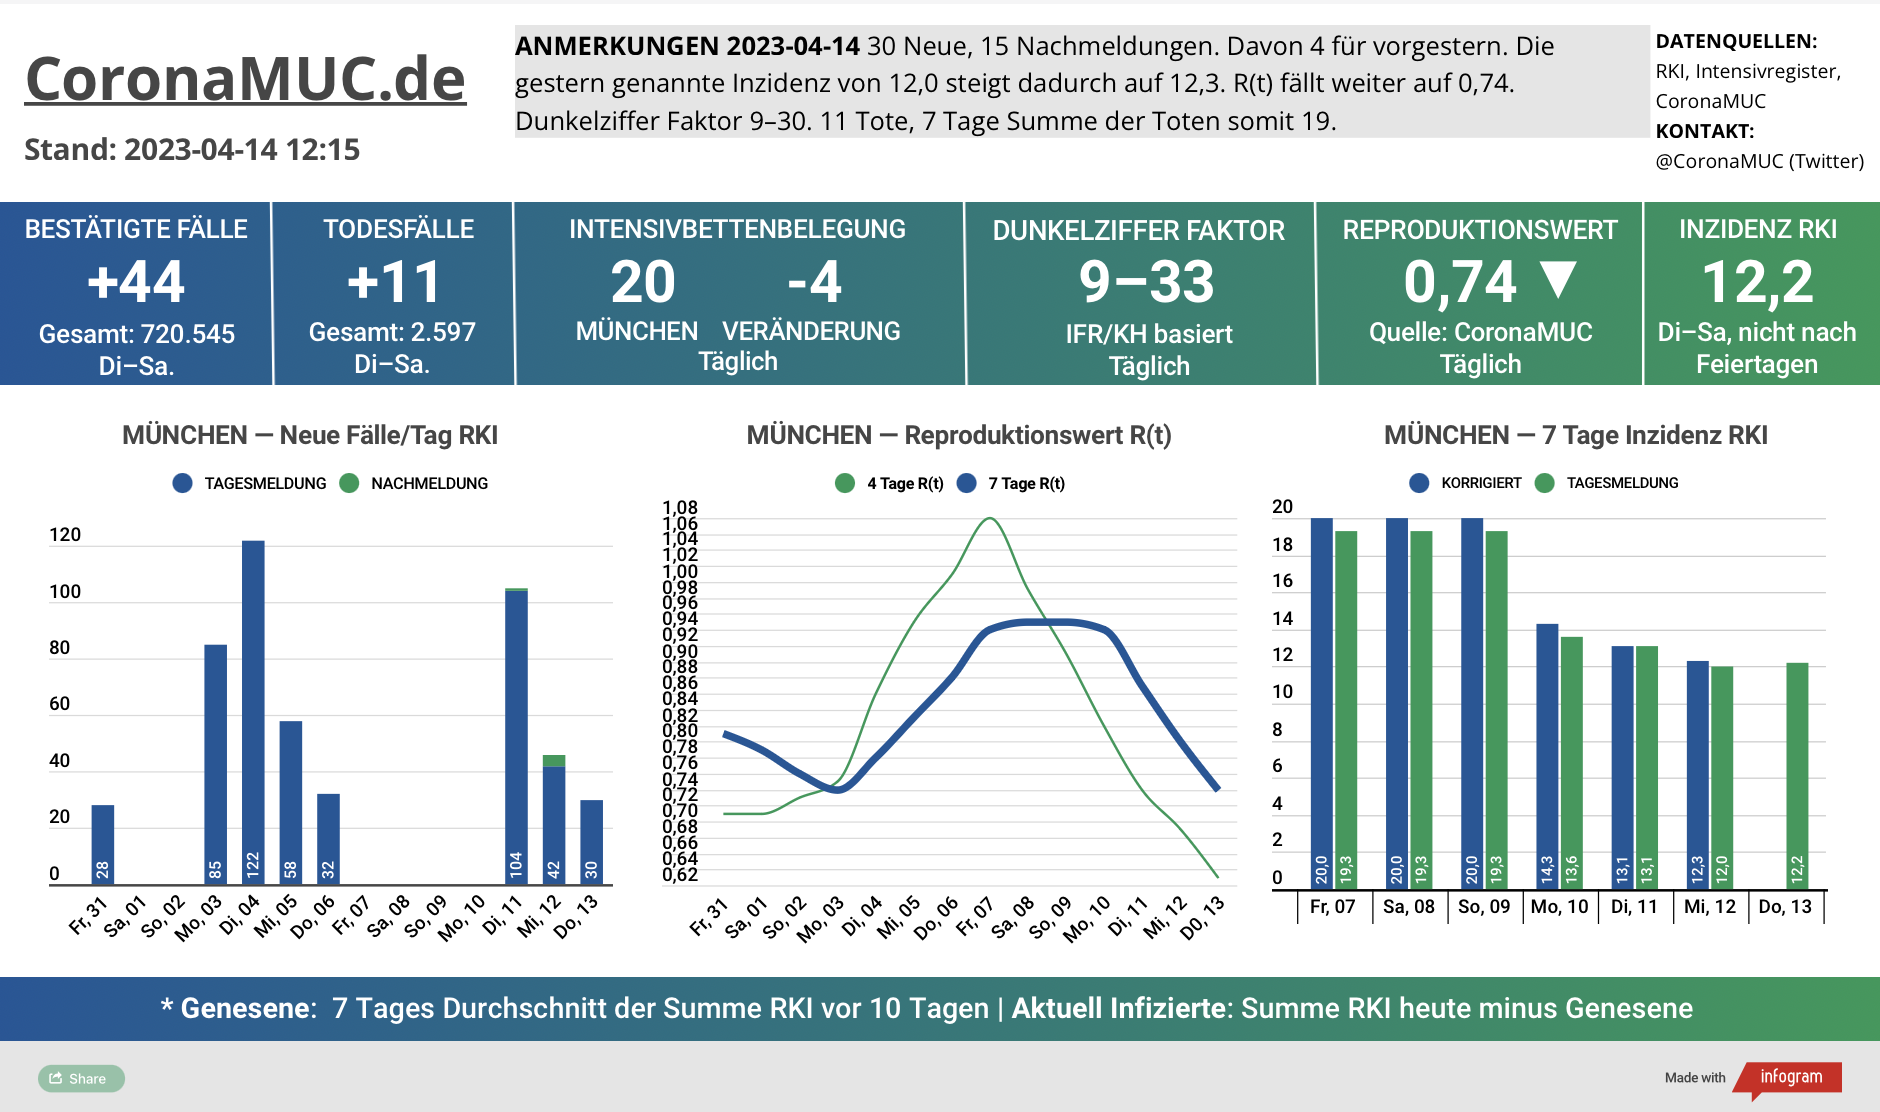 2023-04-14 Dashboard mit den Zahlen für München. Drei Graphen. Erste zeigt Neu- und Nachmeldungen, weniger als in der Vorwoche. Zweite zeigt R(t) Wert für München, der jetzt auf 0,74 sinkt. Dritte zeigt Inzidenz, die zwar stabil weit unter 50 liegt aber wegen Ostern und mangelnder PCR Tests wenig aussagekräftig ist.